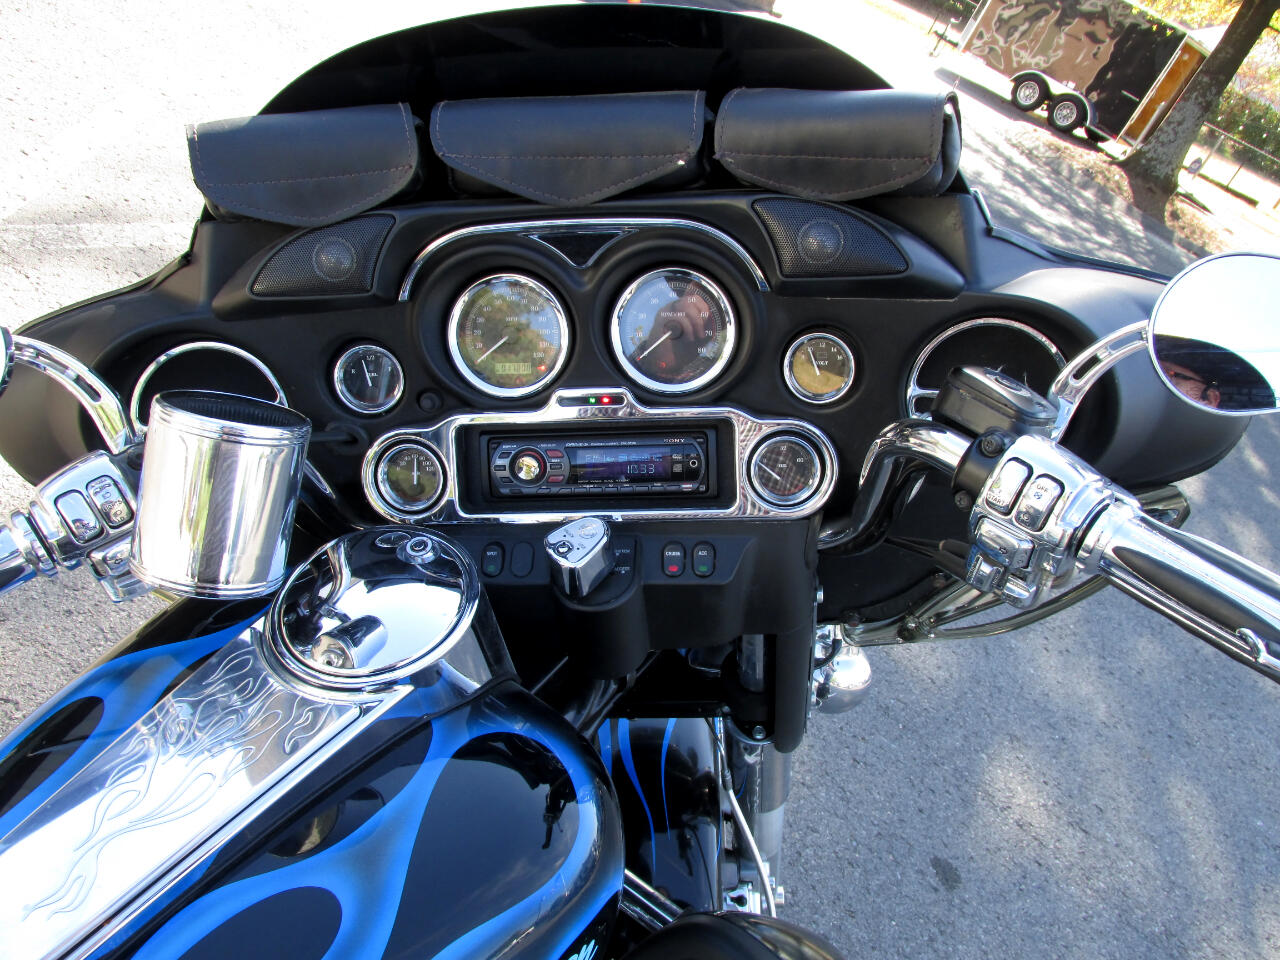 2007 Harley-Davidson FLHTI 10